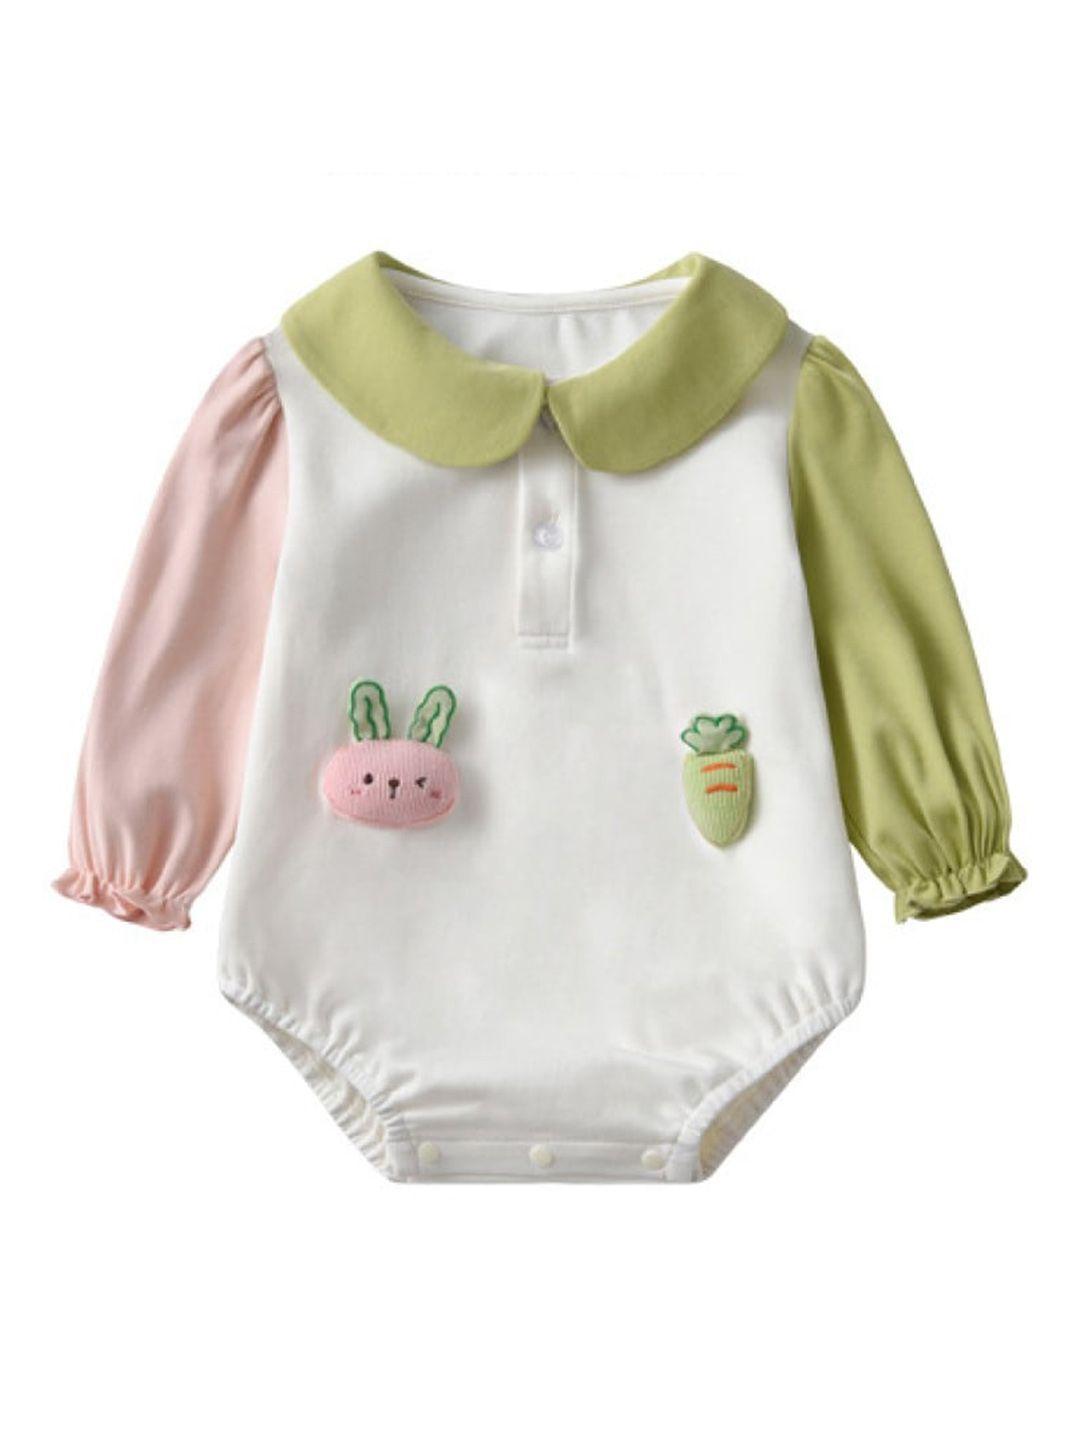 StyleCast White Infants Girls Self Design Cotton Romper